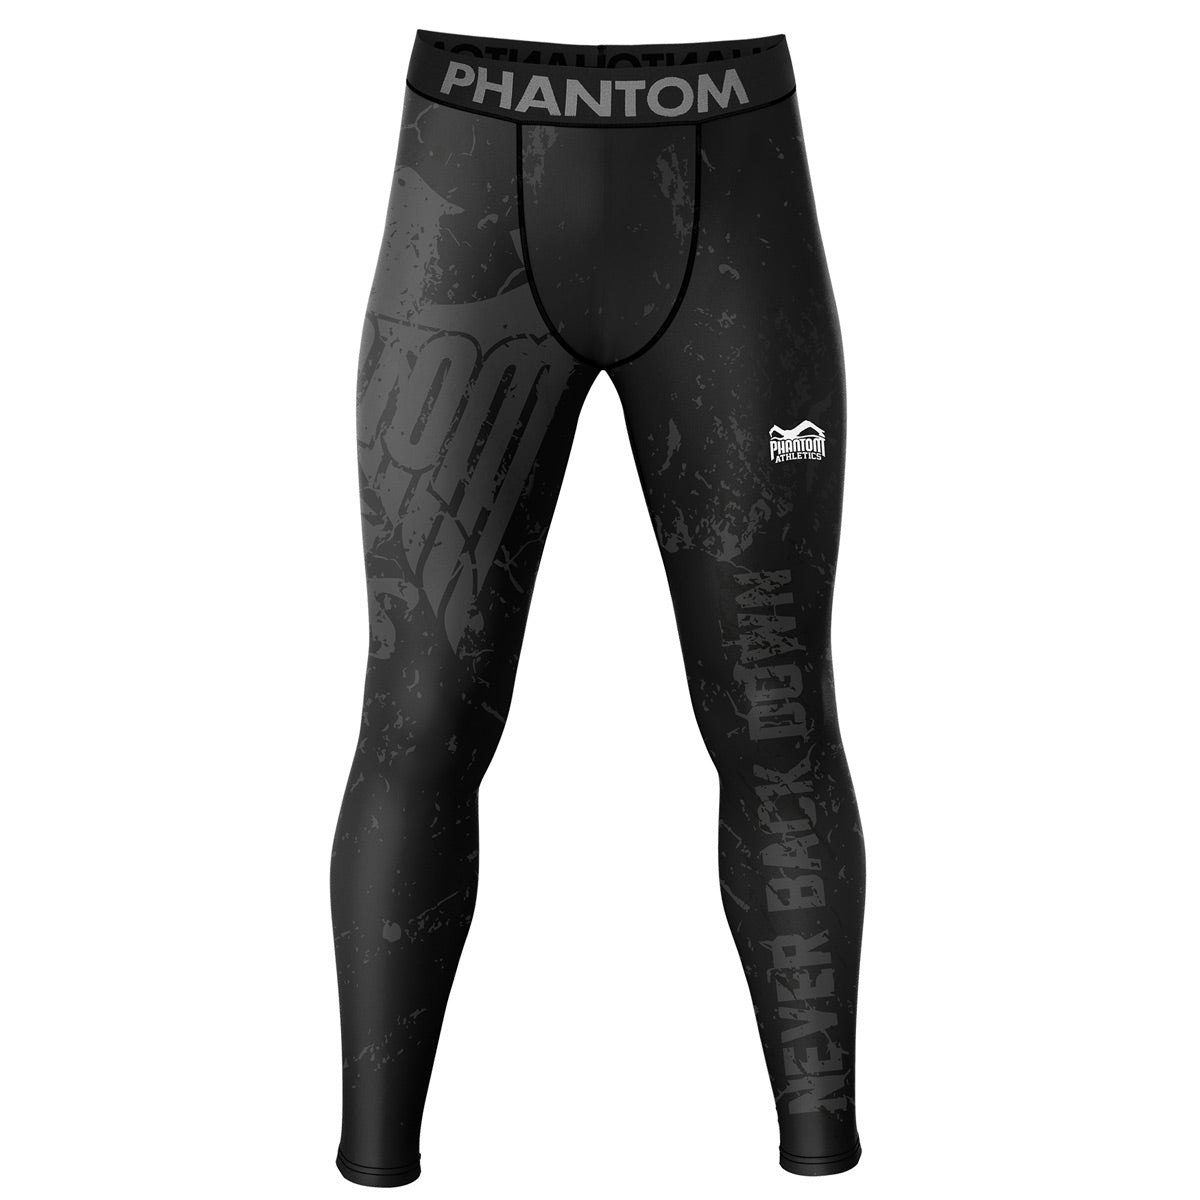 Kompresné bojové šortky Phantom EVO v dizajne Team Germany. S nemeckým orlom a nápisom „Never Back Down“. Ideálne pre vaše bojové športy, ako je MMA, Muay Thai, wrestling, BJJ alebo kickbox.